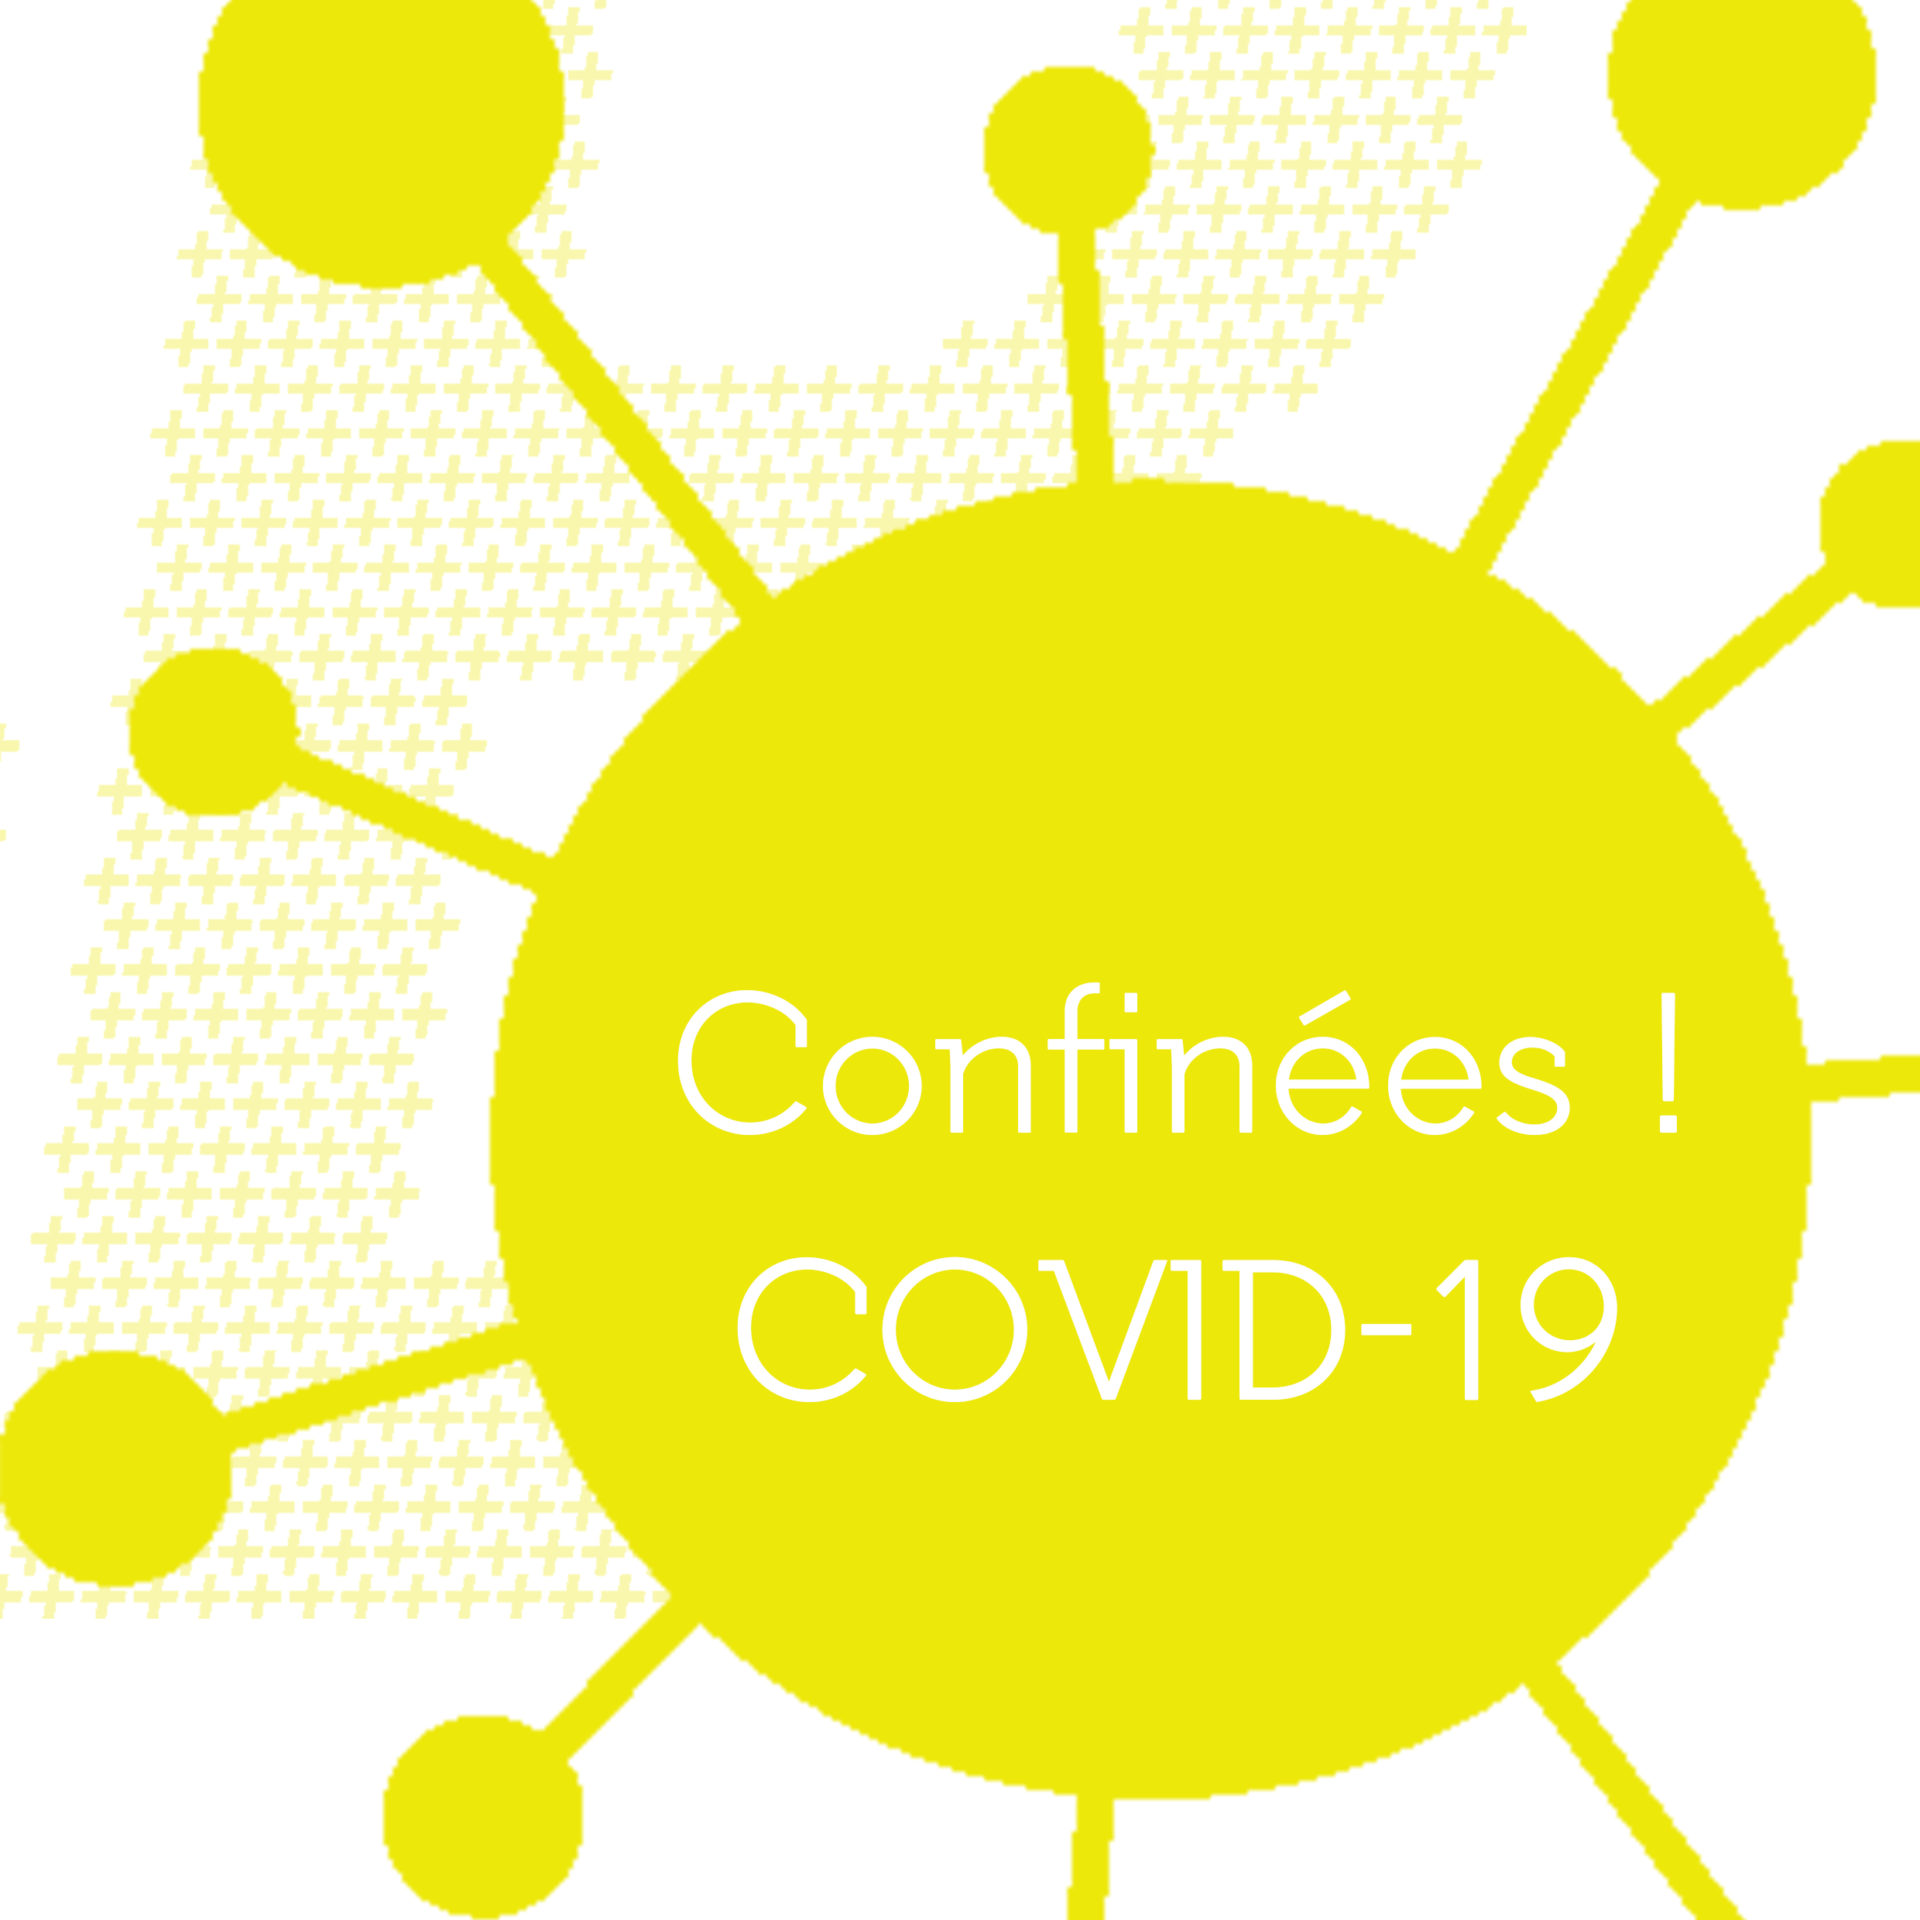 COVID-19 message